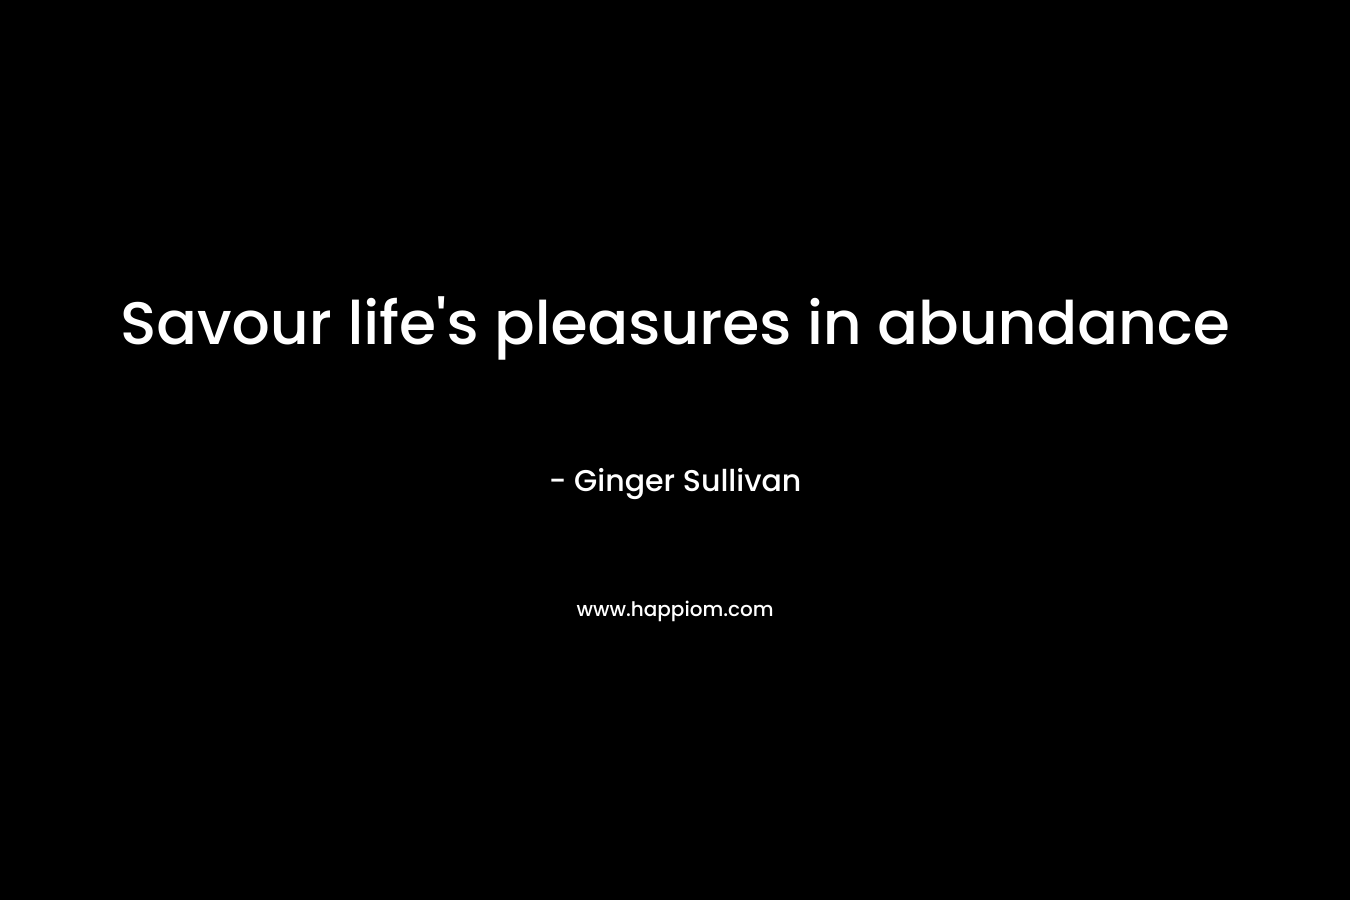 Savour life's pleasures in abundance